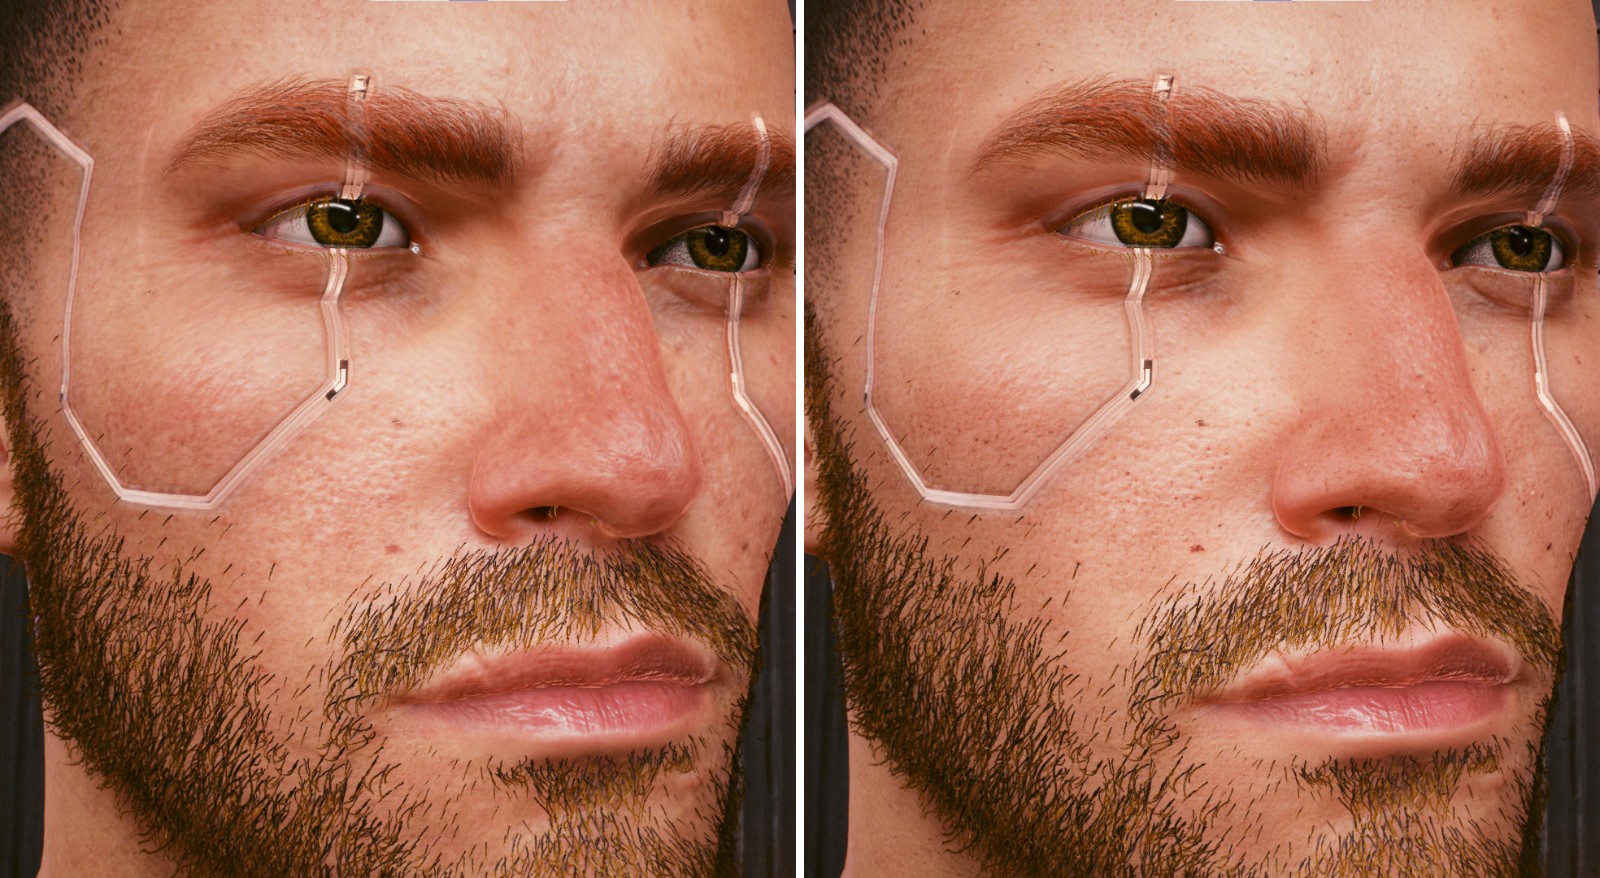 《電馭叛客2077》4K高清面部和身體Mod 毛孔清晰可見